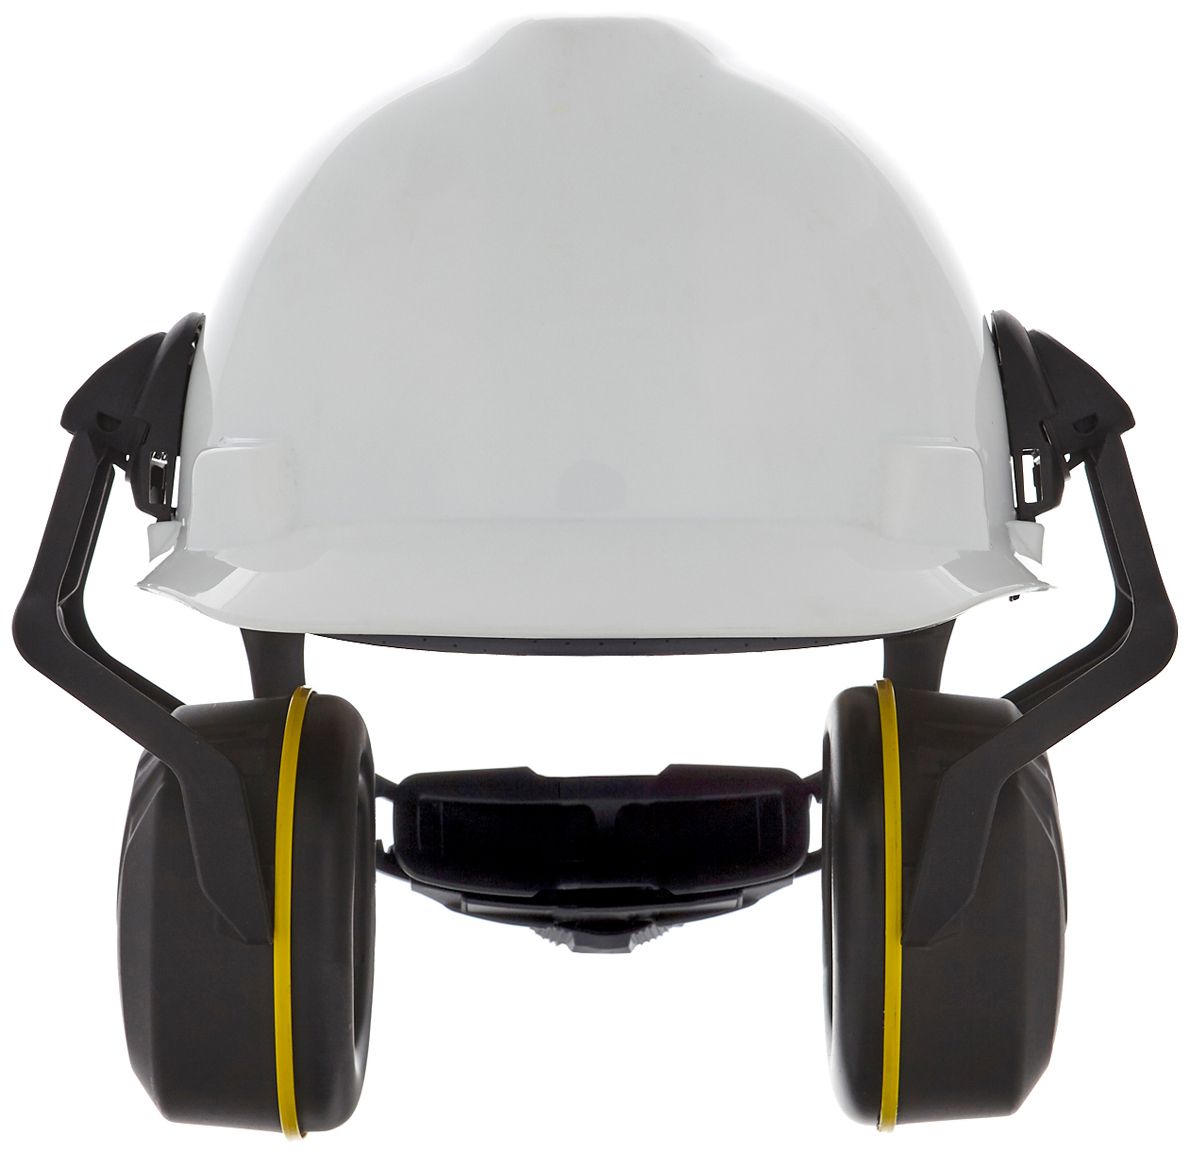 MSA V-Gard Helm-Kapselgehörschutz - Gehörschutz-Kapseln mit Halterung für die Helmmontage - Schwarz/Gelb - SNR: 32 dB